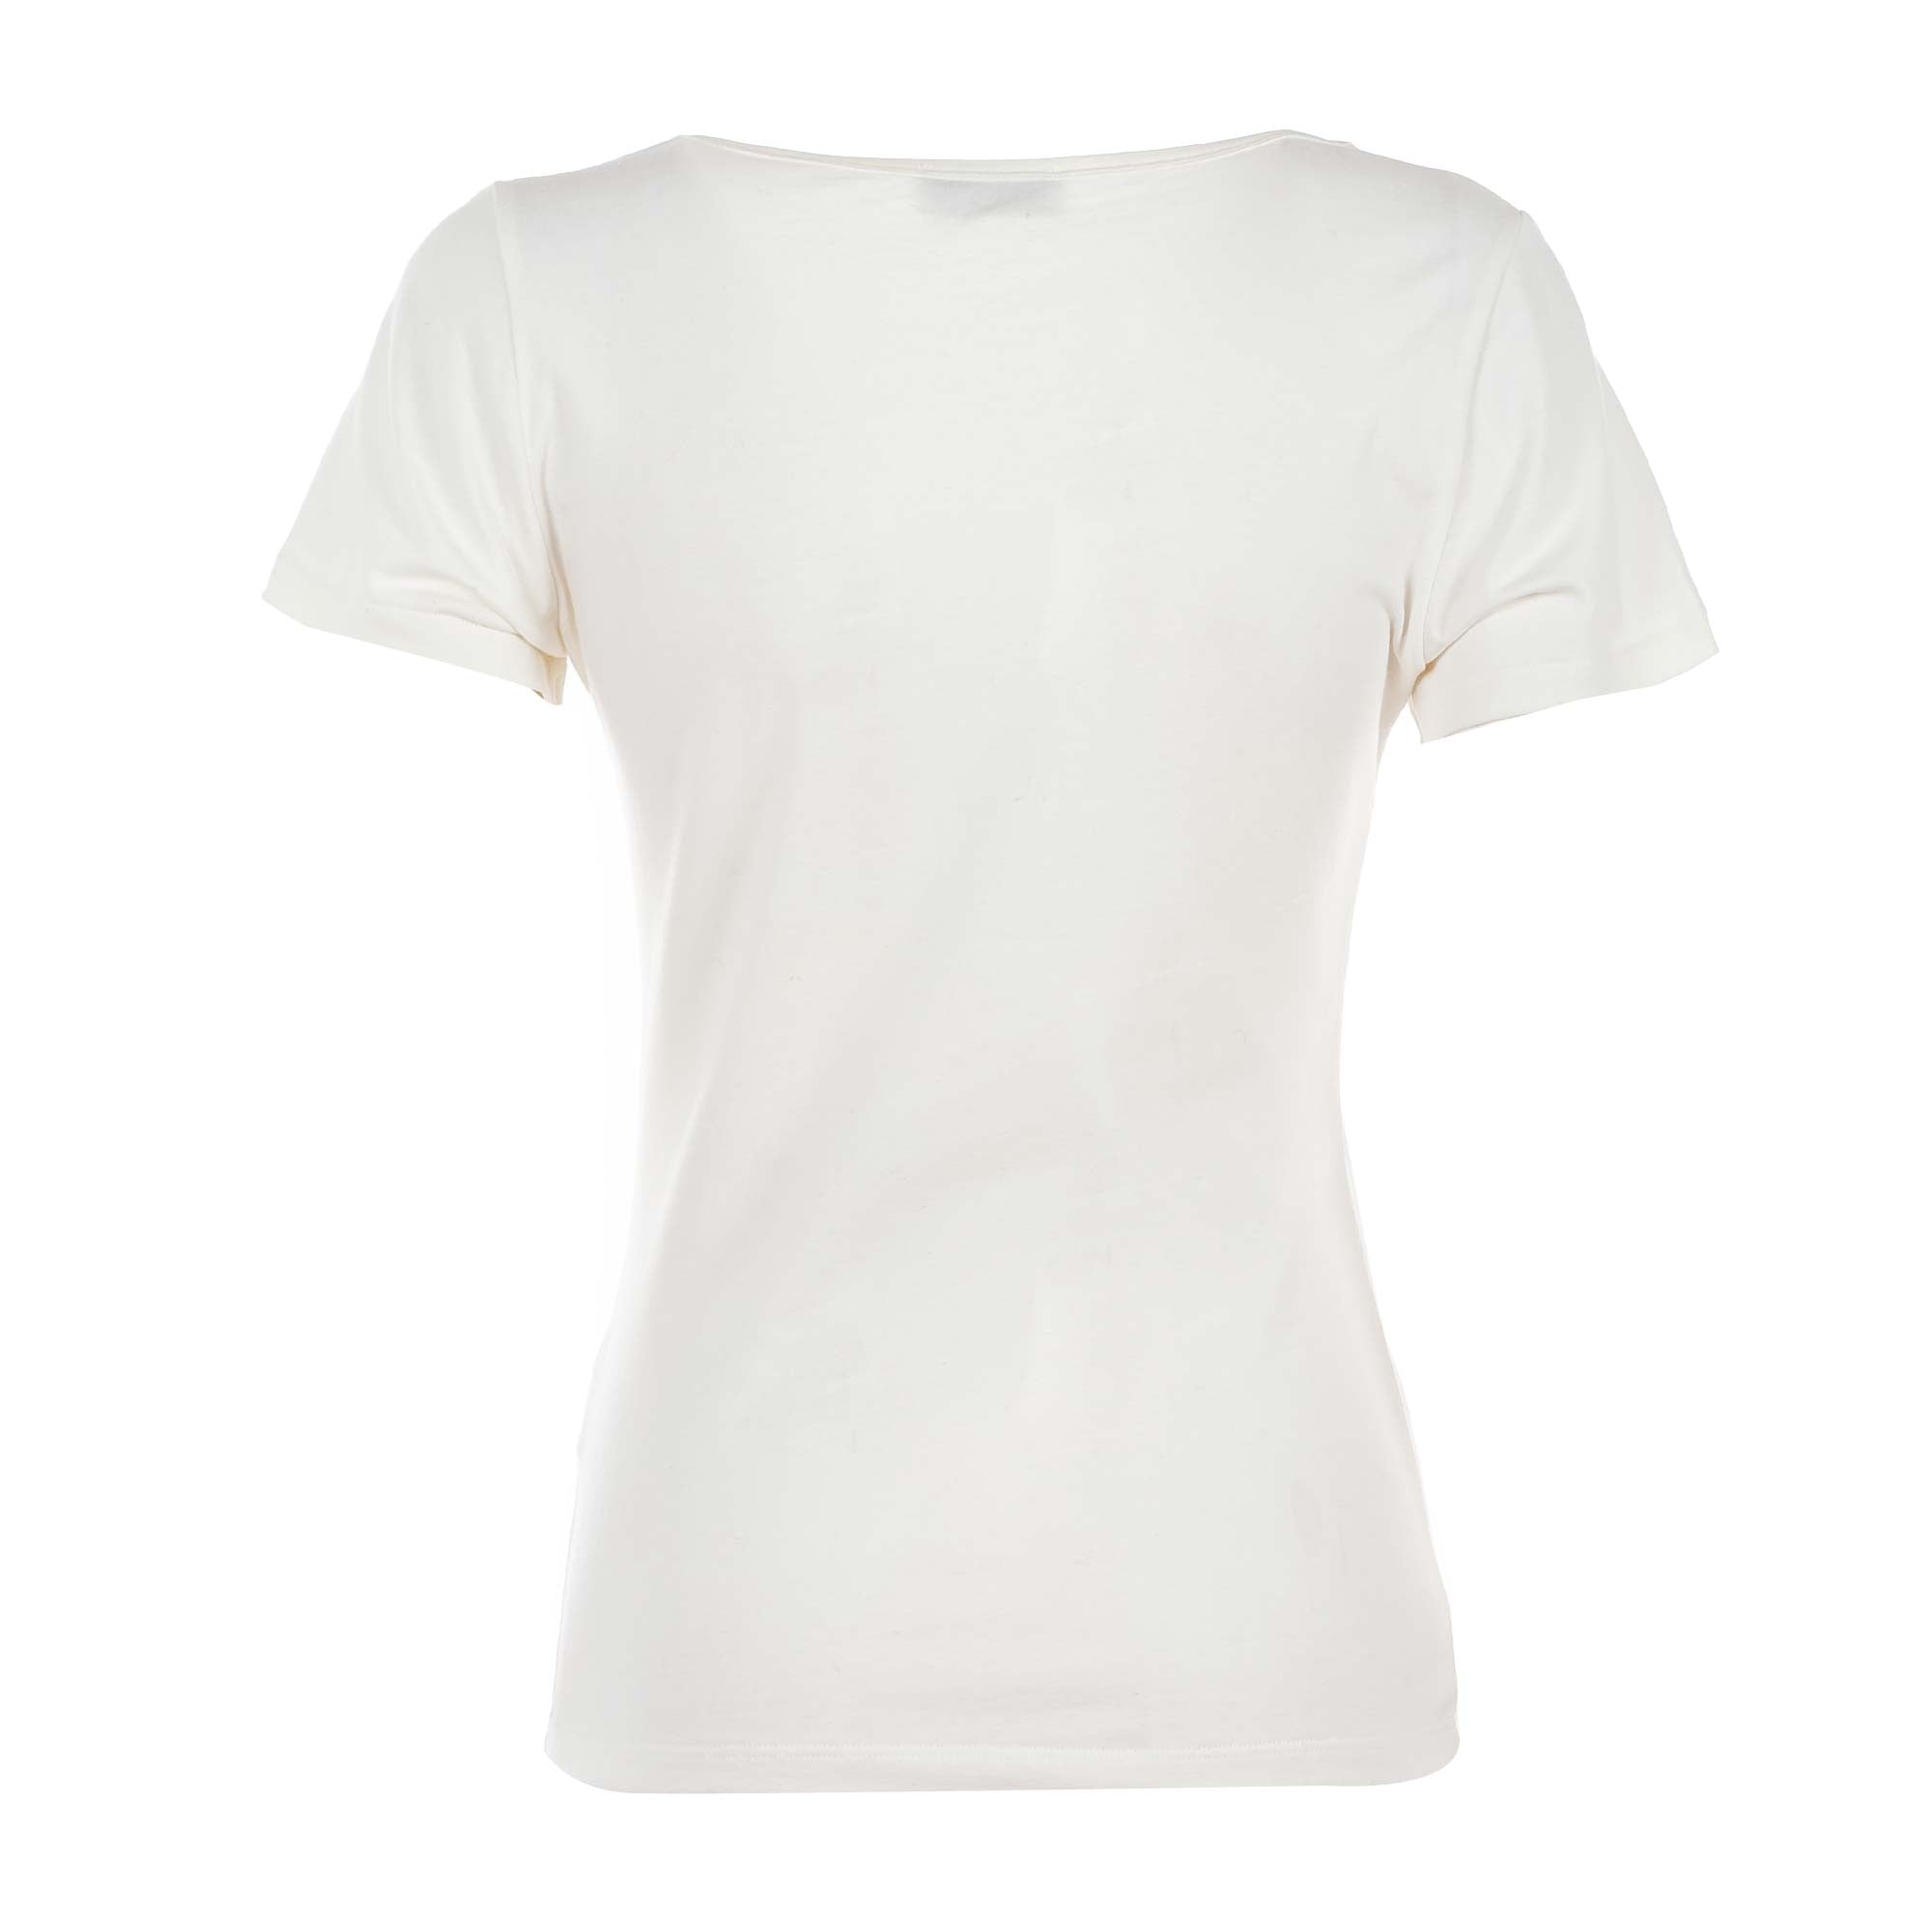 T-shirt BRACCIALINI da donna, bianco